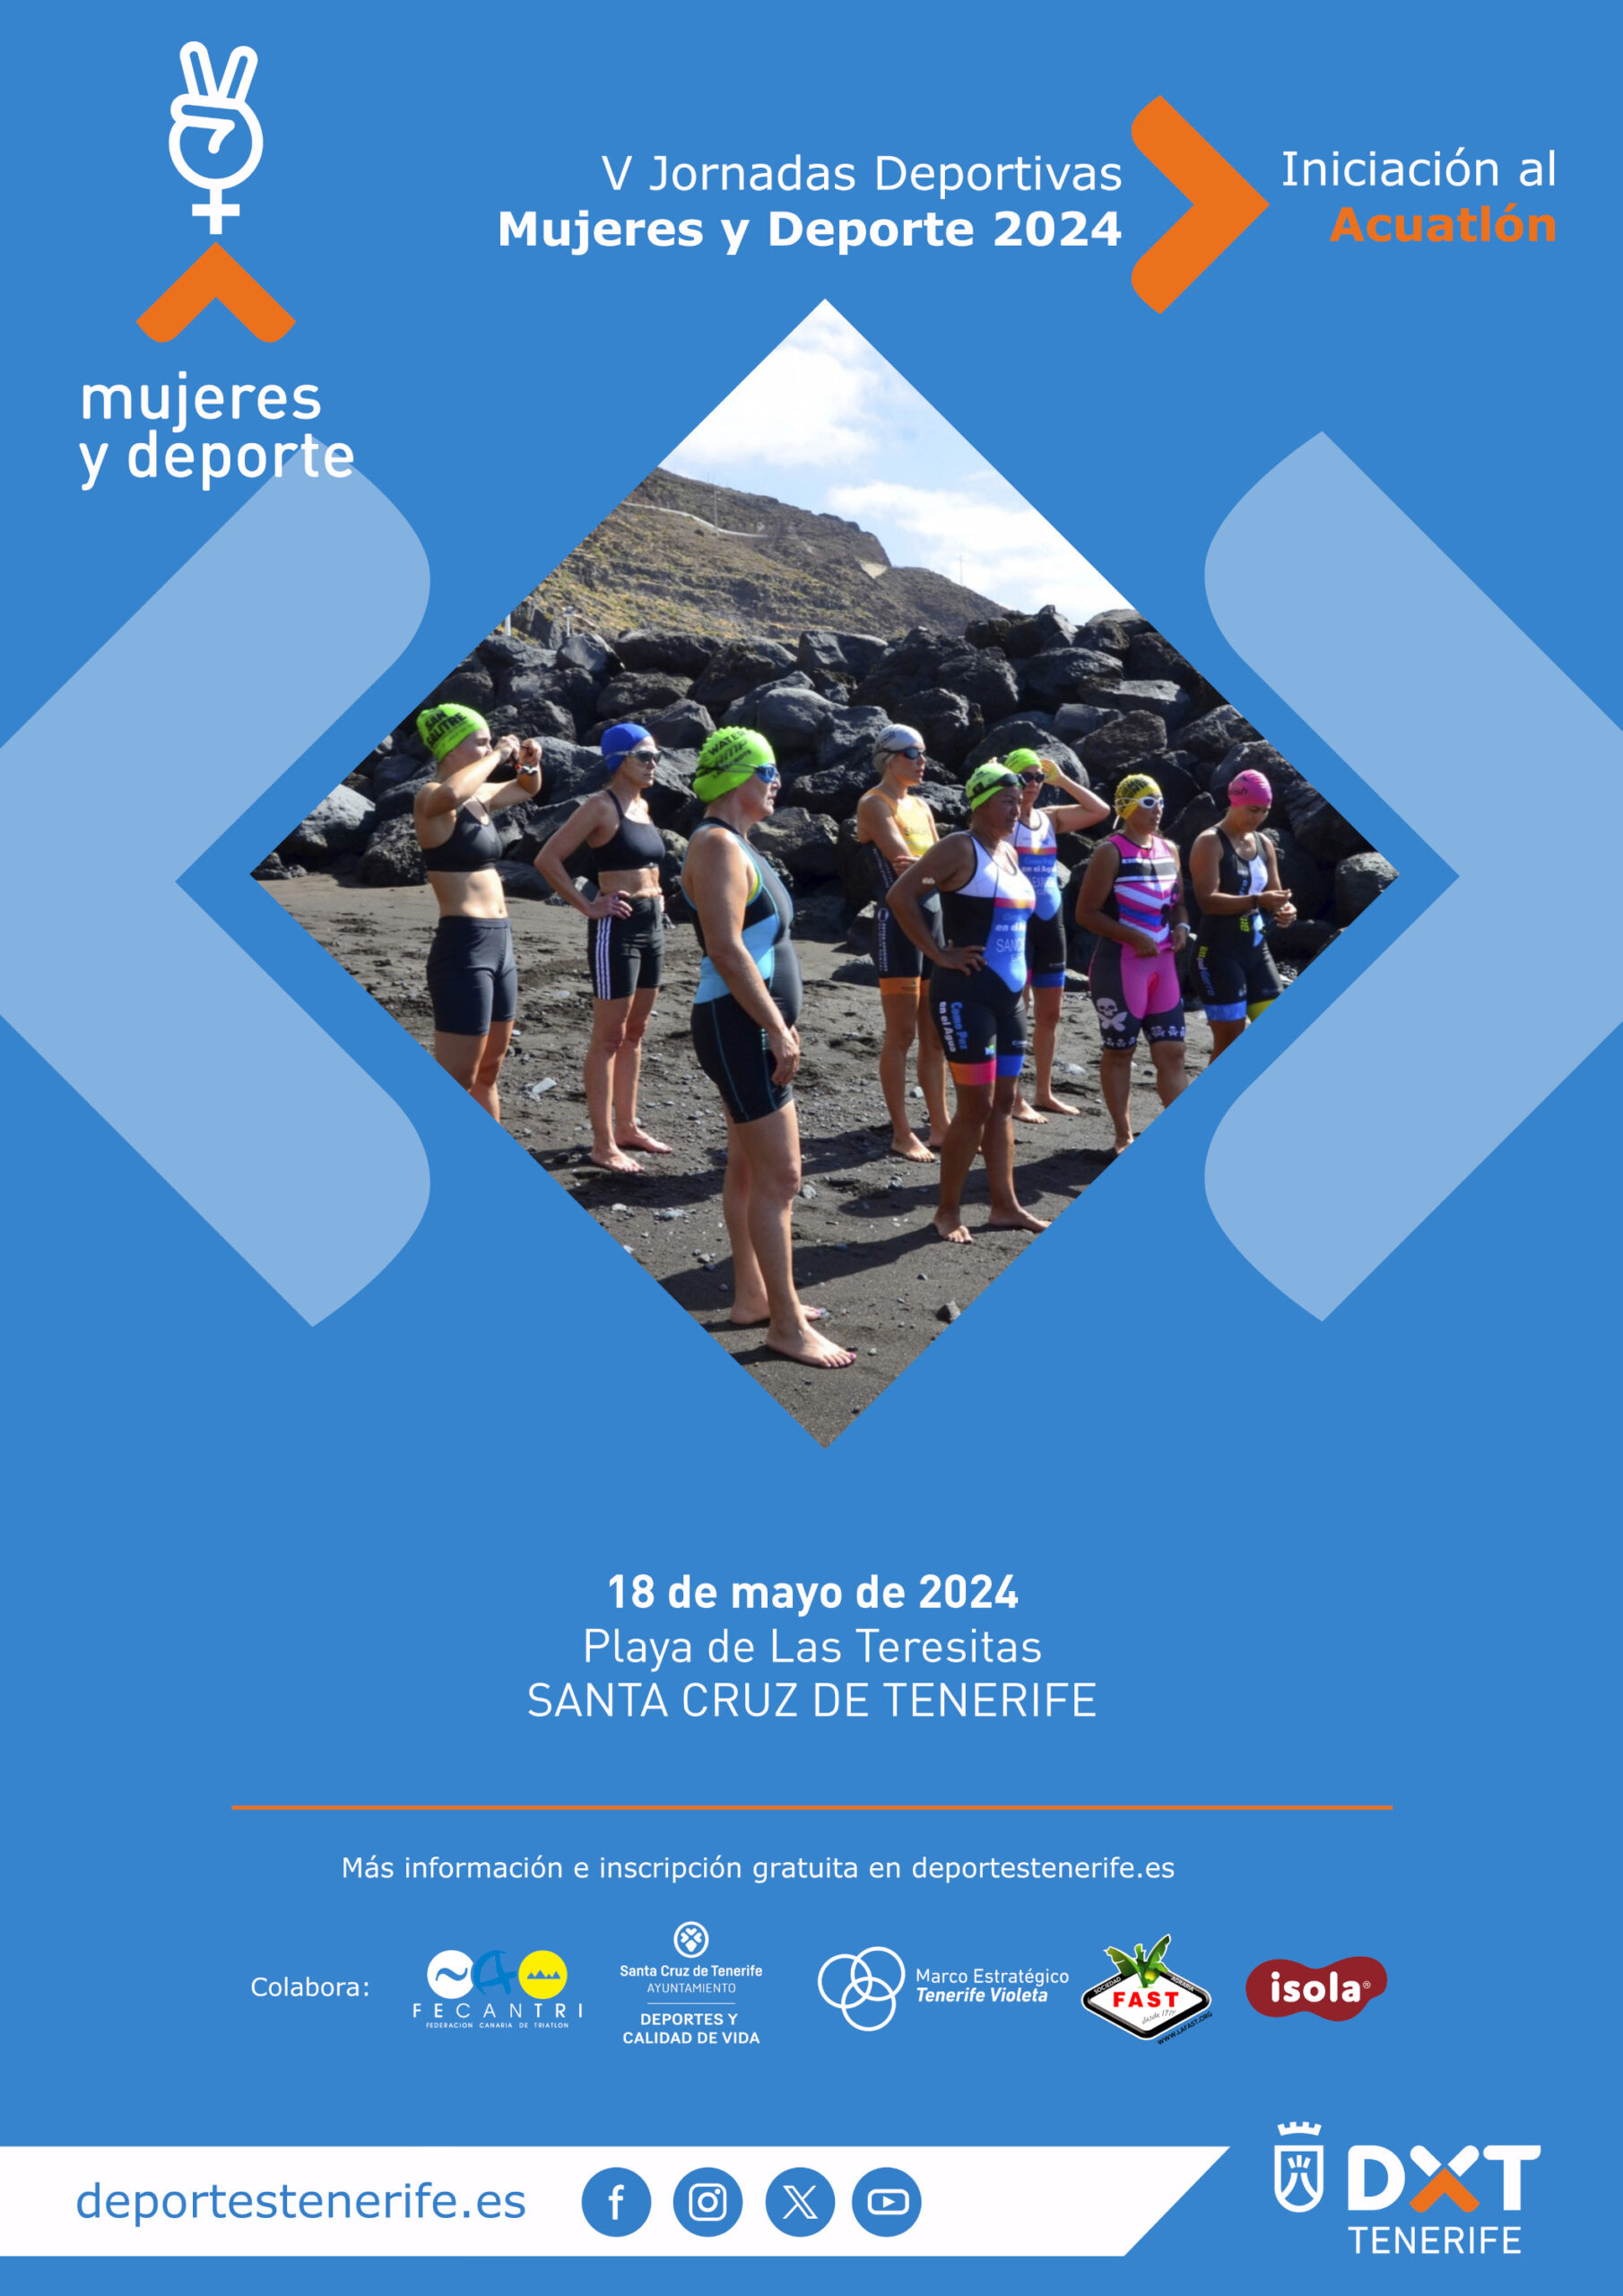 V Jornadas Deportivas Mujeres y Deporte 2024 - Iniciación al Acuatlón